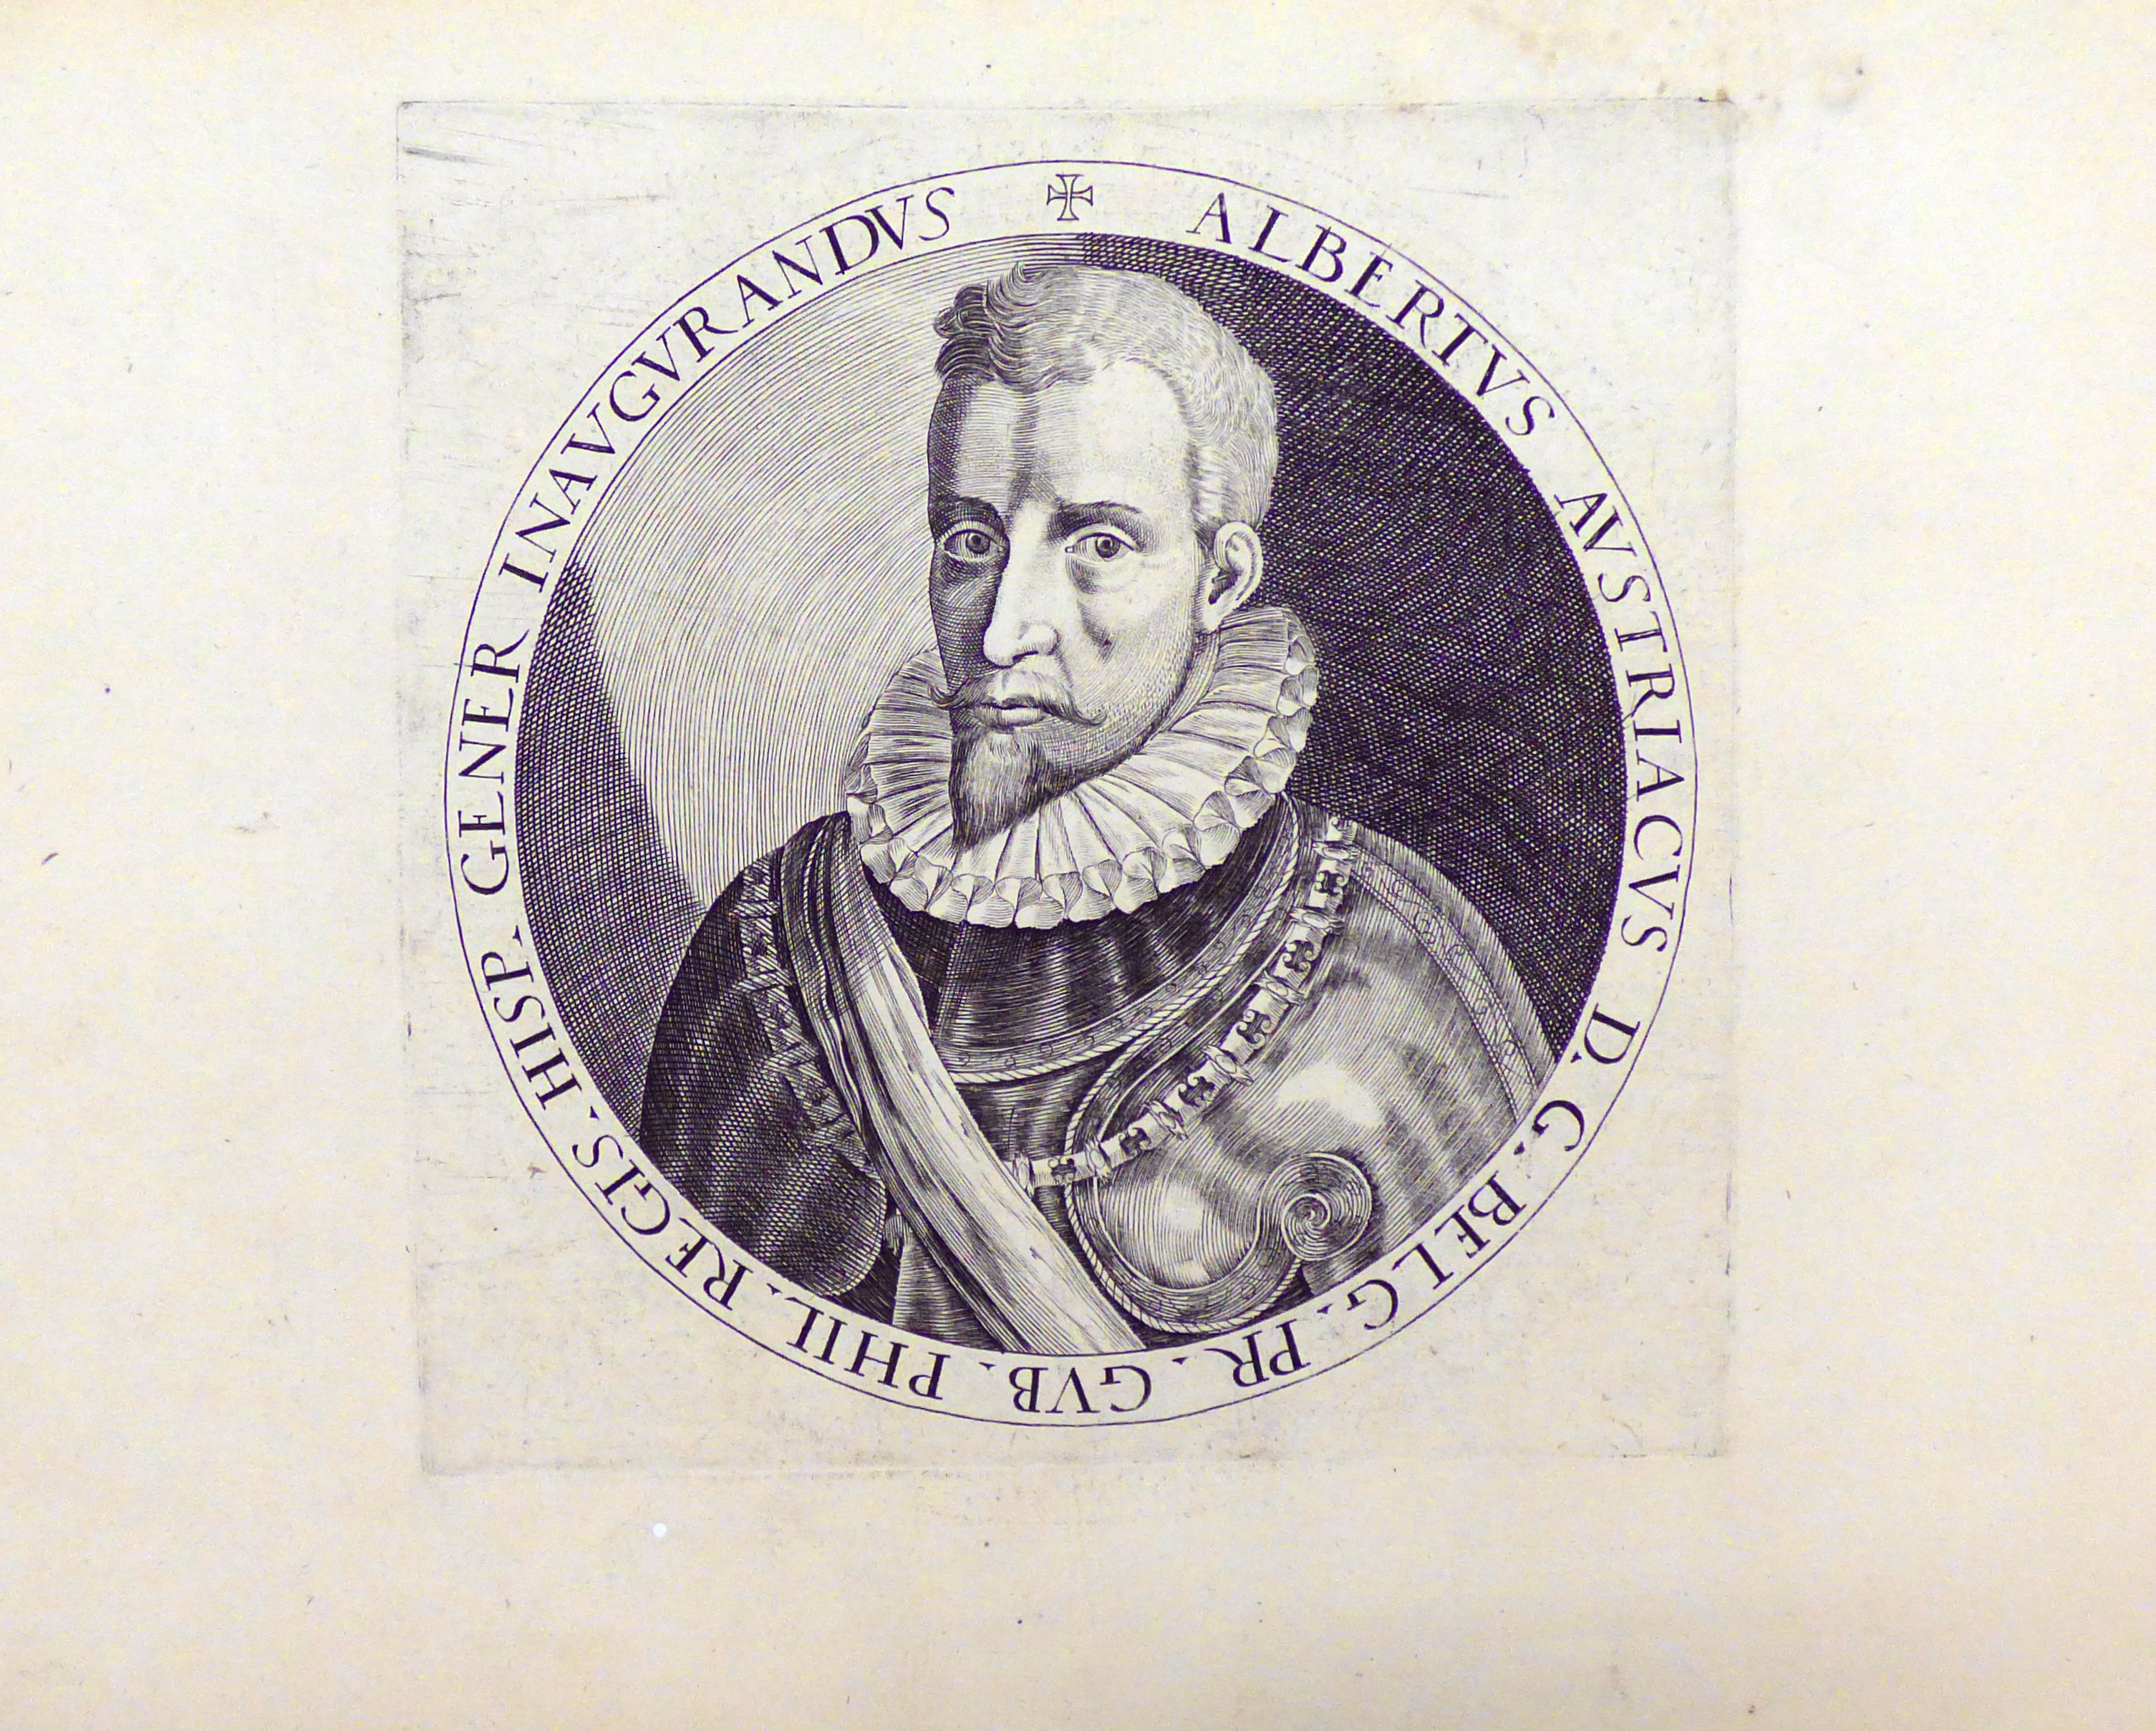 Albrecht VII. von Österreich, Statthalter der Niederlande, 1595 (Städtisches Museum Schloss Rheydt CC BY)